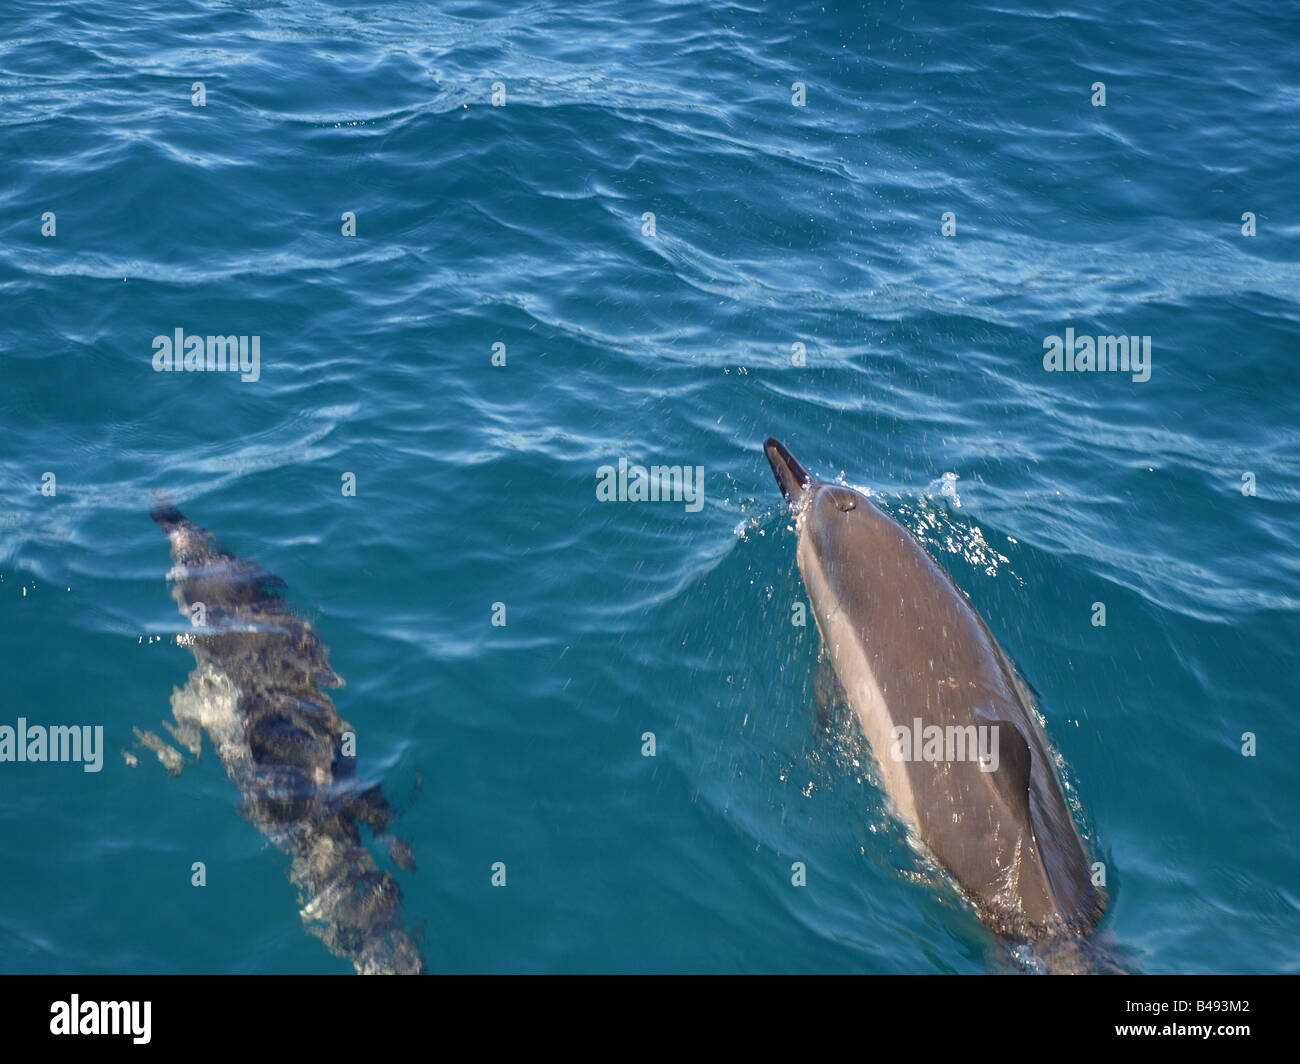 Dolphins by the Wainae coast of Oahu, Hawaii Stock Photo